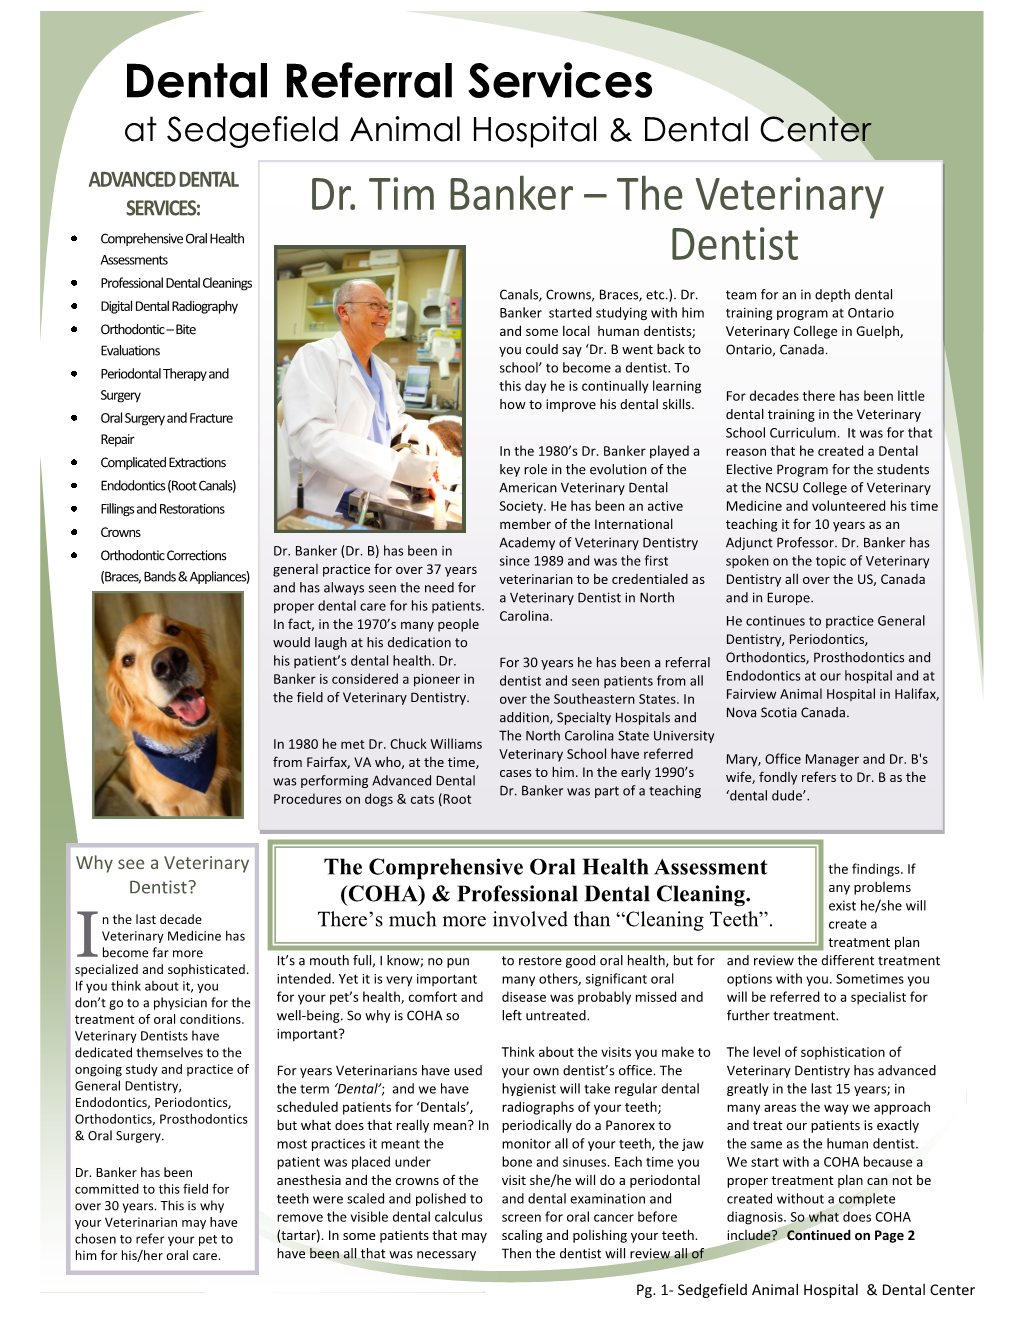 Dr. Tim Banker – the Veterinary Dentist